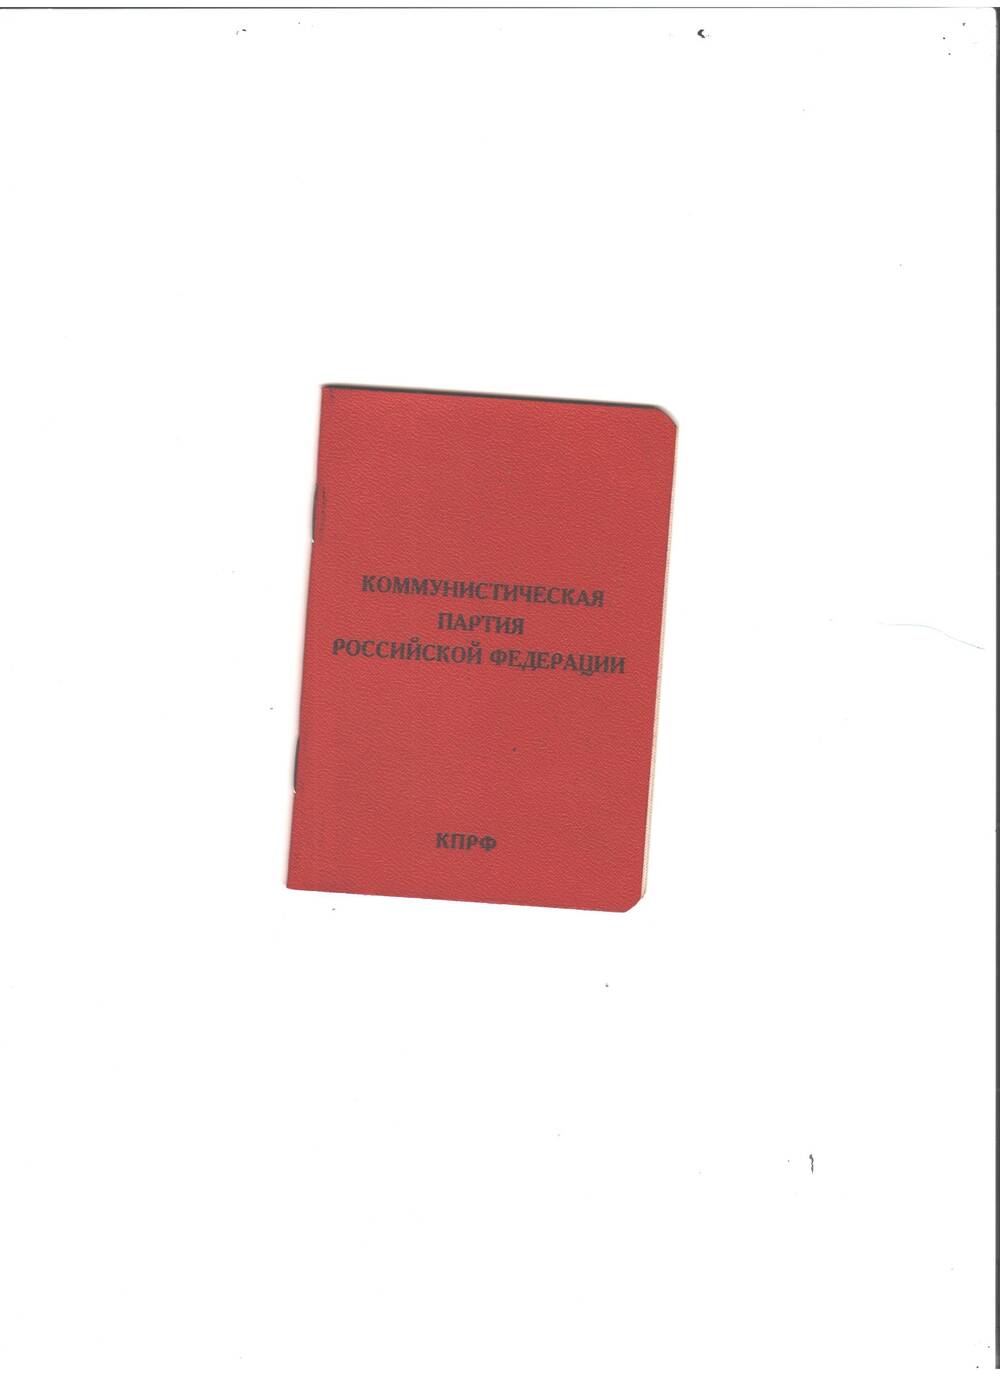 Билет партийный, №0005318. Члена Коммунистической партии Российской Федерации Хурматуллина Ф.Х. Дата выдачи 15 мая 1997г. Имеется печать первичной орг-ии. Обложка красного цвета.